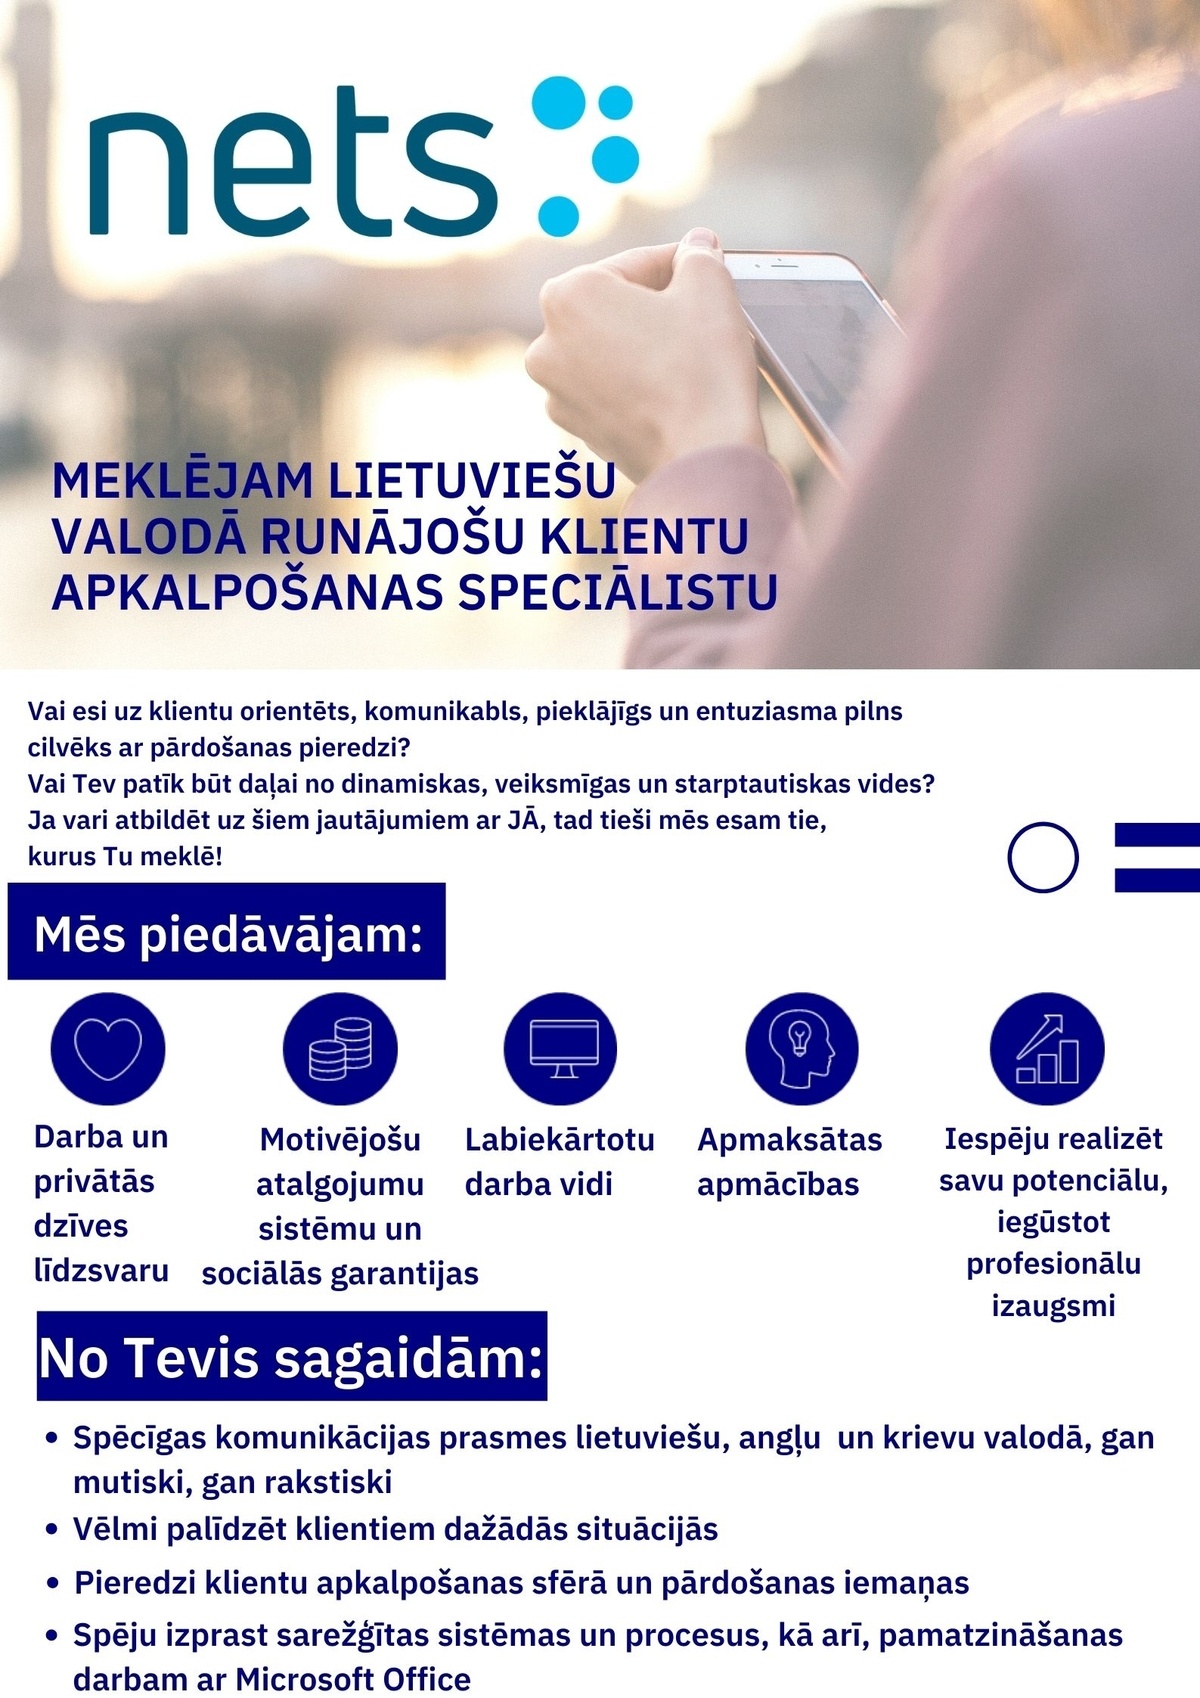 Transcom Worldwide Latvia, SIA Klientu apkalpošanas speciālists(-e) ar lietuviešu valodas zināšanām